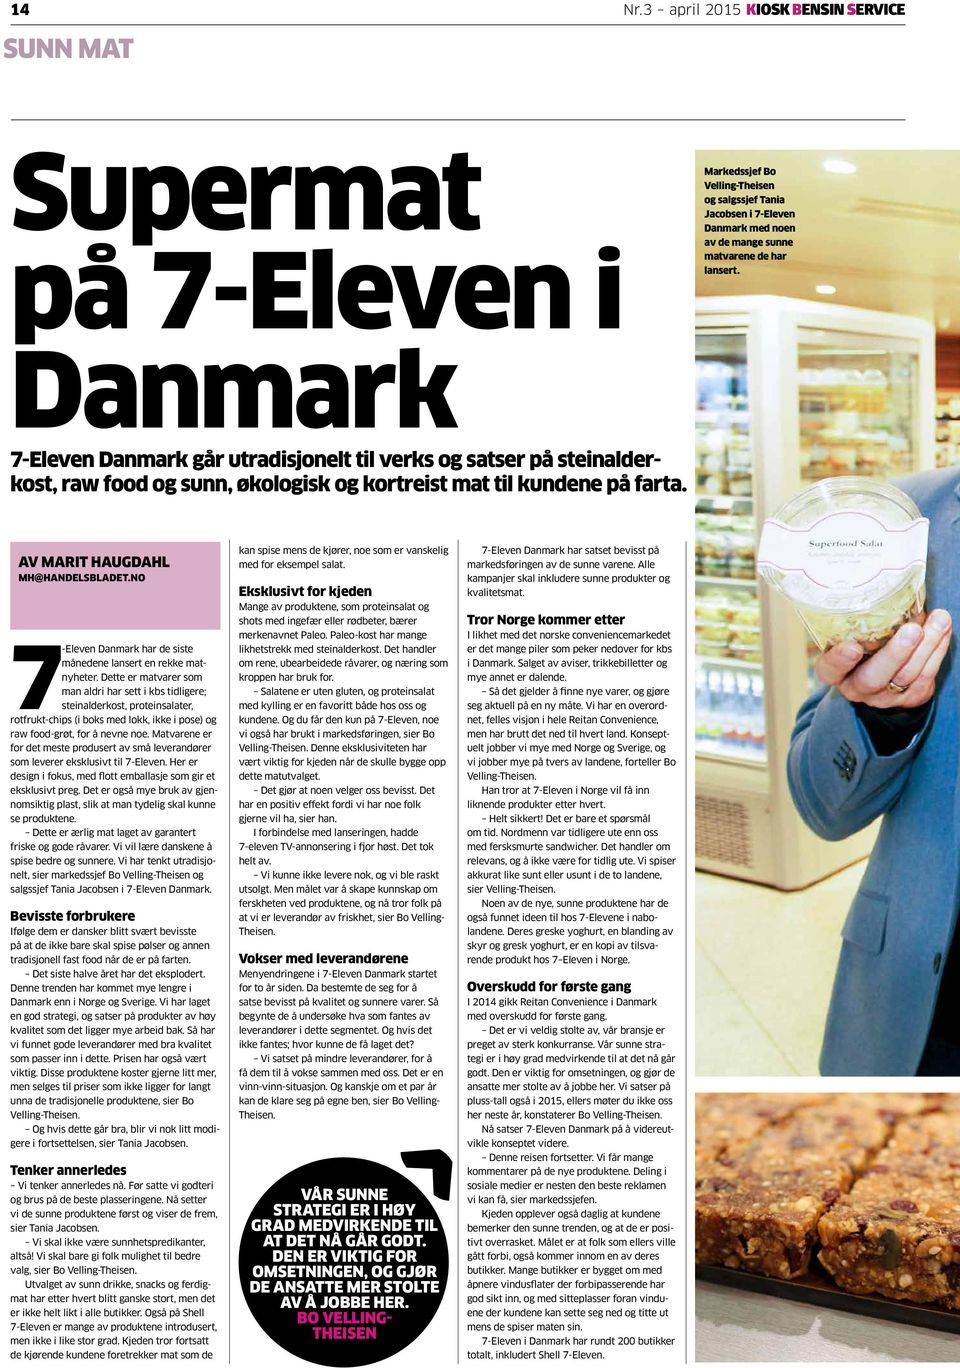 kundene på farta. Markedssjef Bo Velling-Theisen og salgssjef Tania Jacobsen i 7-Eleven Danmark med noen av de mange sunne matvarene de har lansert. AV MARIT HAUGDAHL MH@HANDELSBLADET.